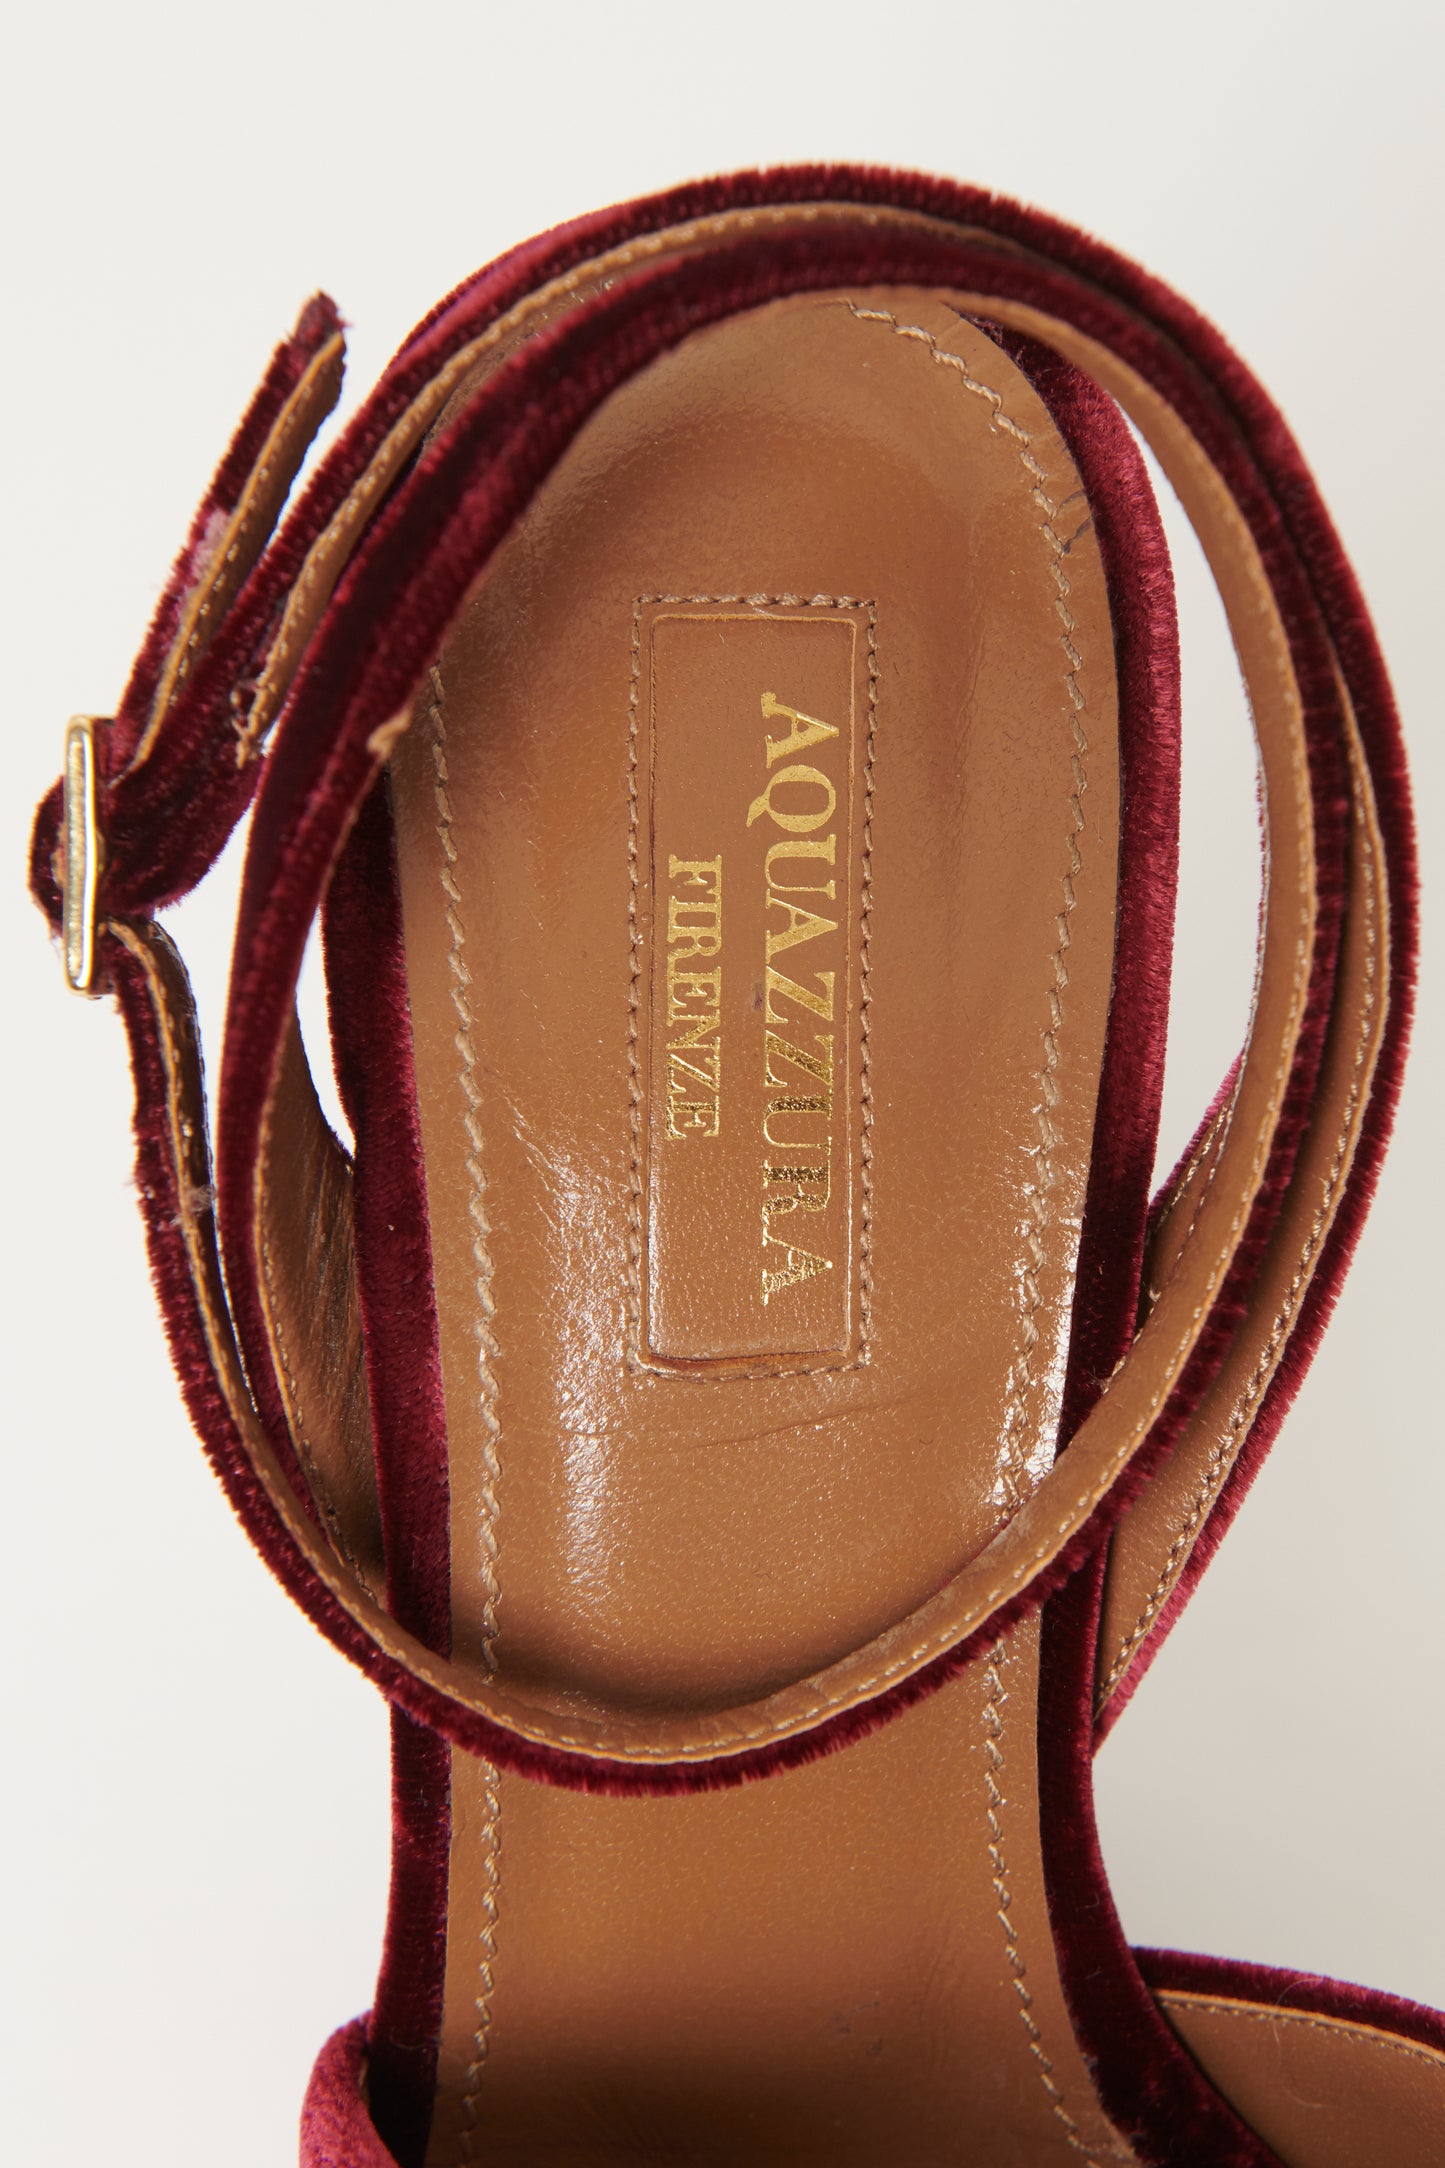 Burgundy Velvet Preowned Platform Sandals